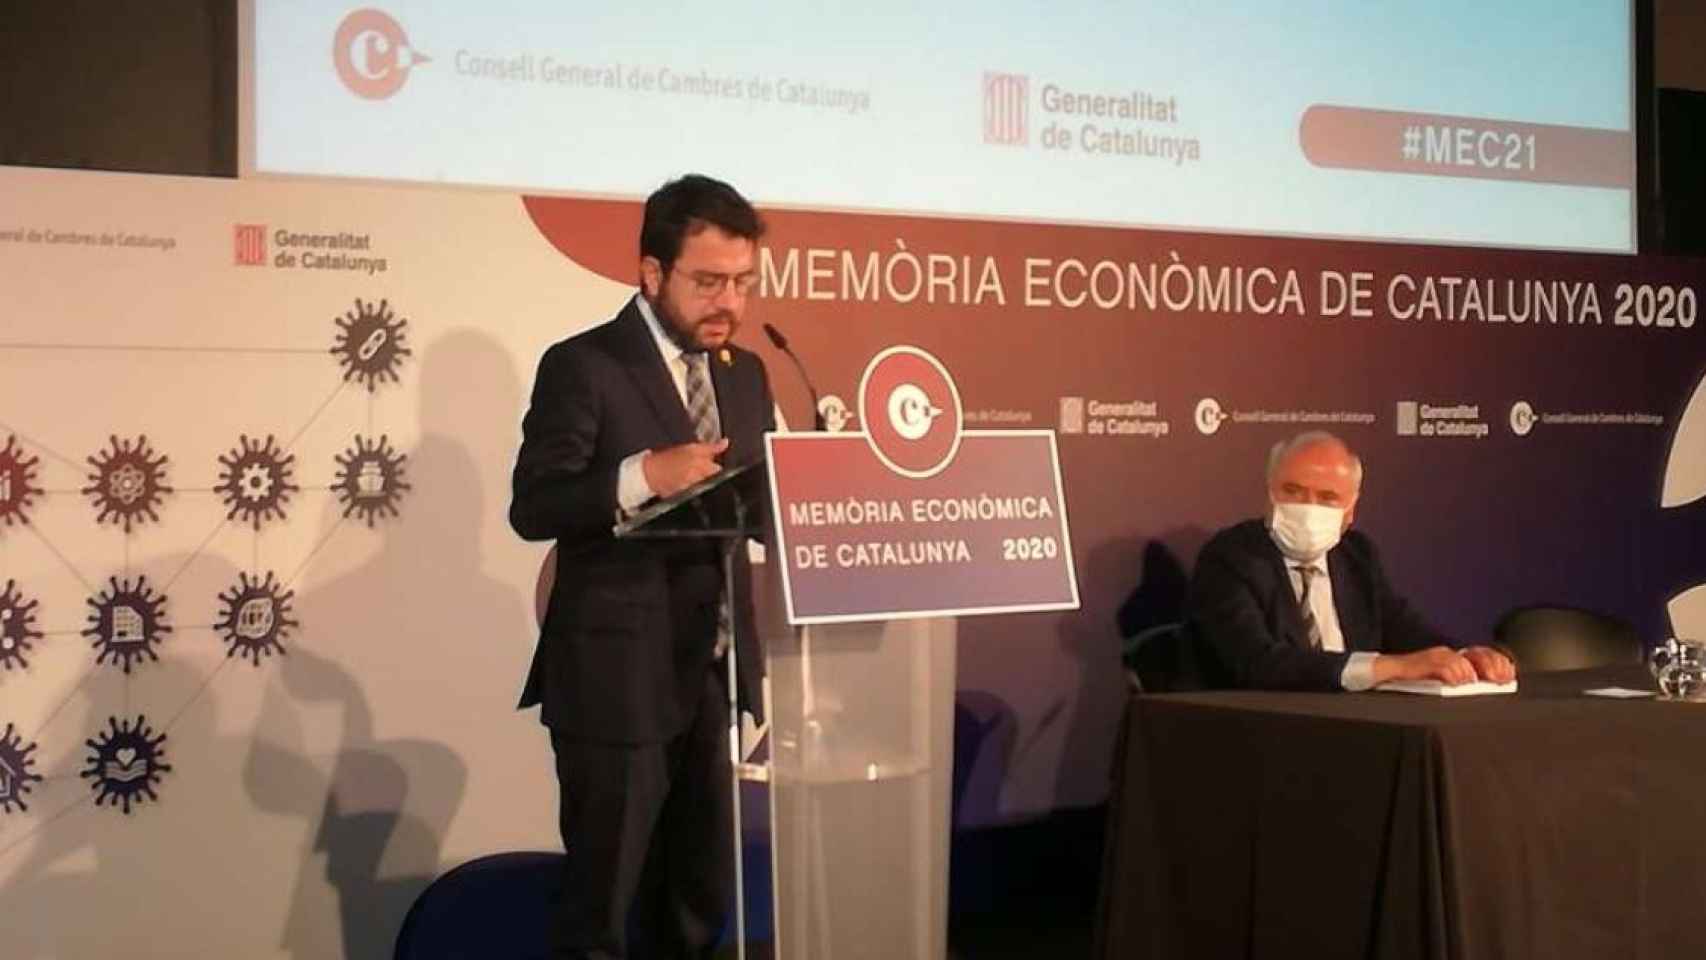 El presidente de la Generalitat, Pere Aragonès, en la presentación de la memoria económica de Cataluña elaborada por la Cámara de Comercio / CG